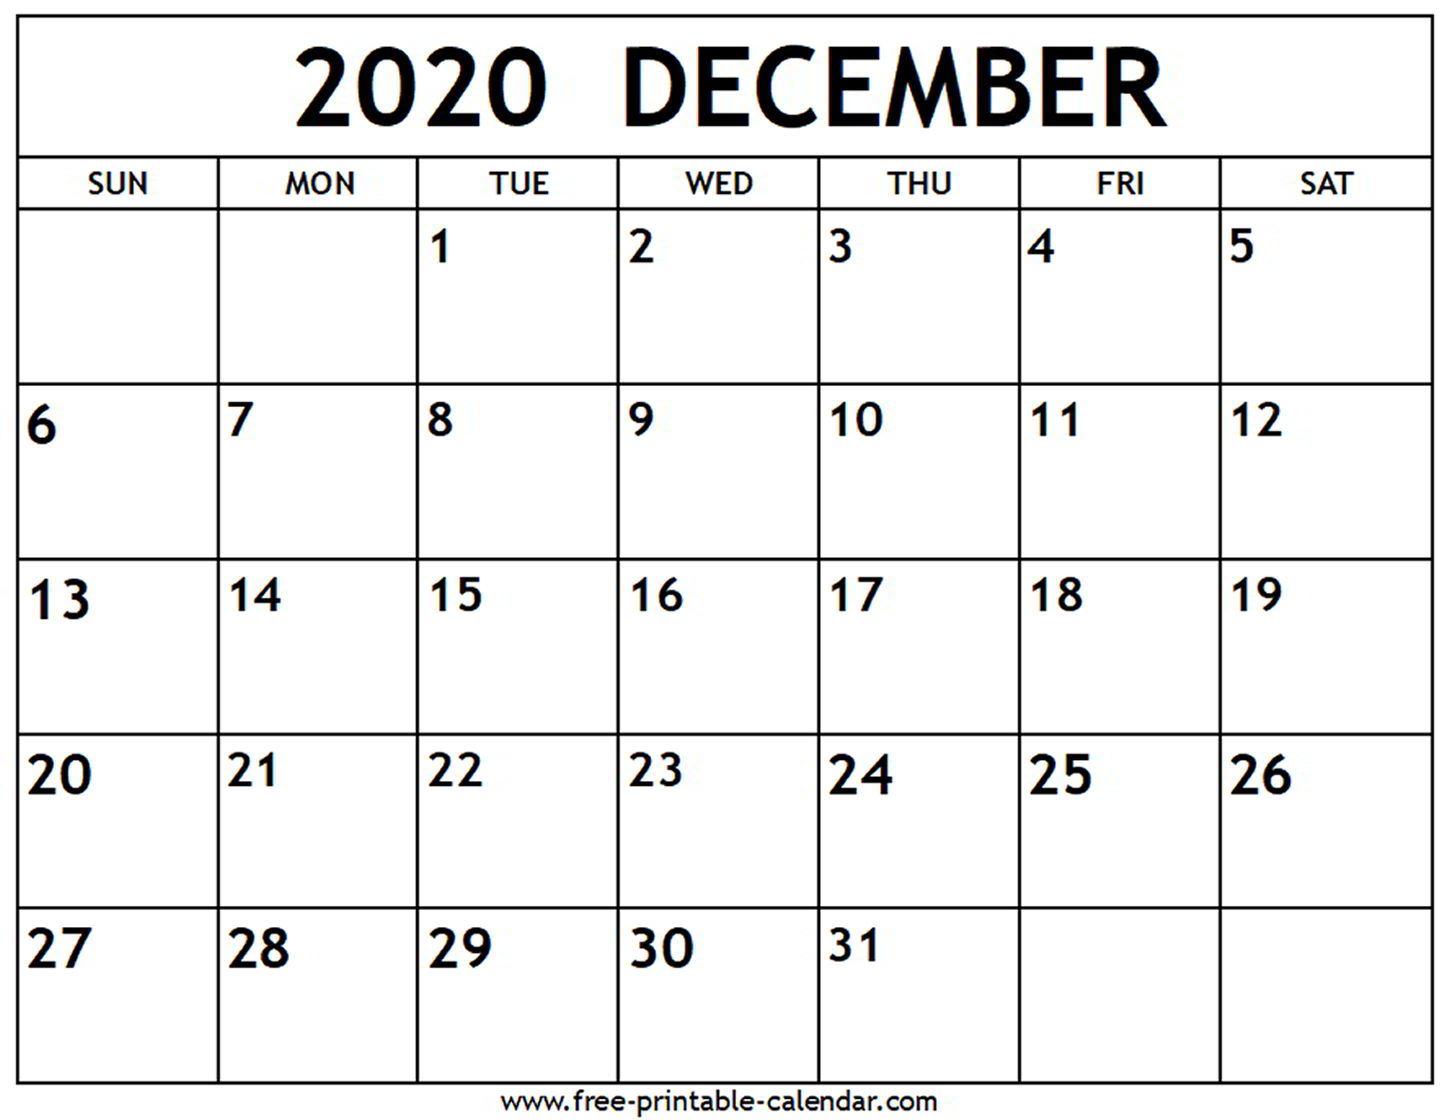 Printable Calendars September 2020 - Wpa.wpart.co